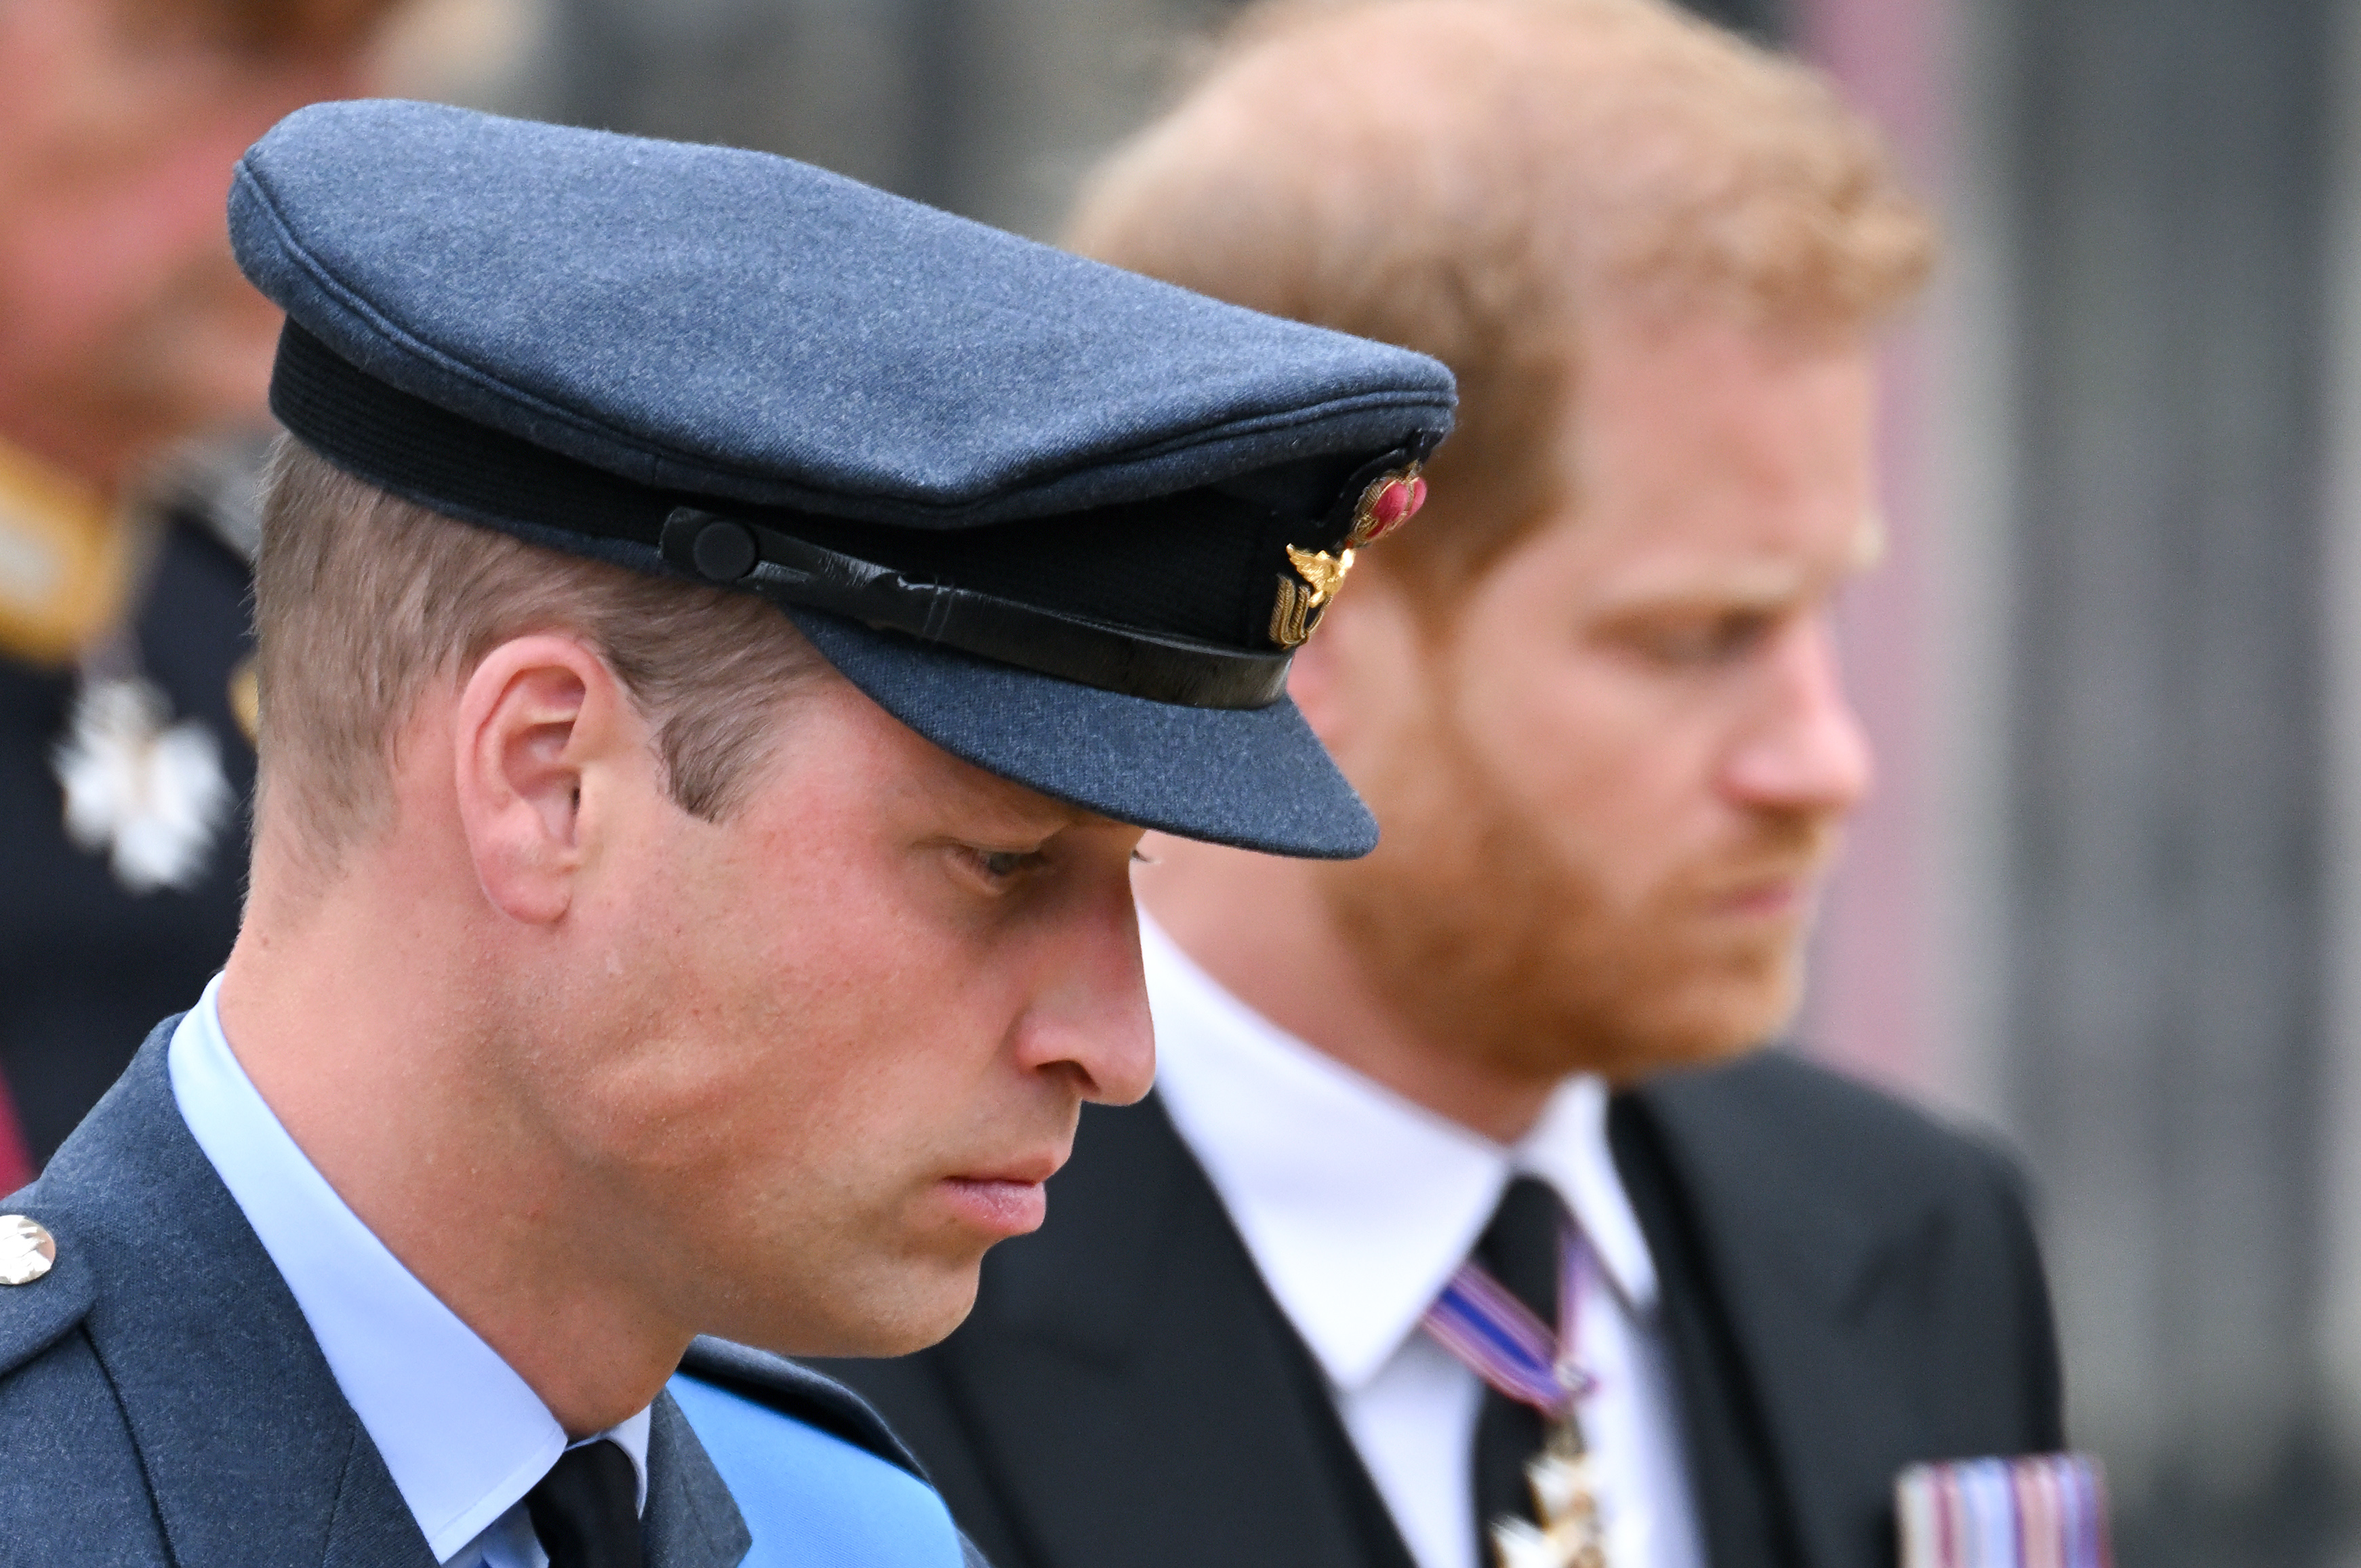 Prinz William und Prinz Harry während des Staatsbegräbnisses von Königin Elizabeth II. in der Westminster Abbey am 19. September 2022 in London, England | Quelle: Getty Images